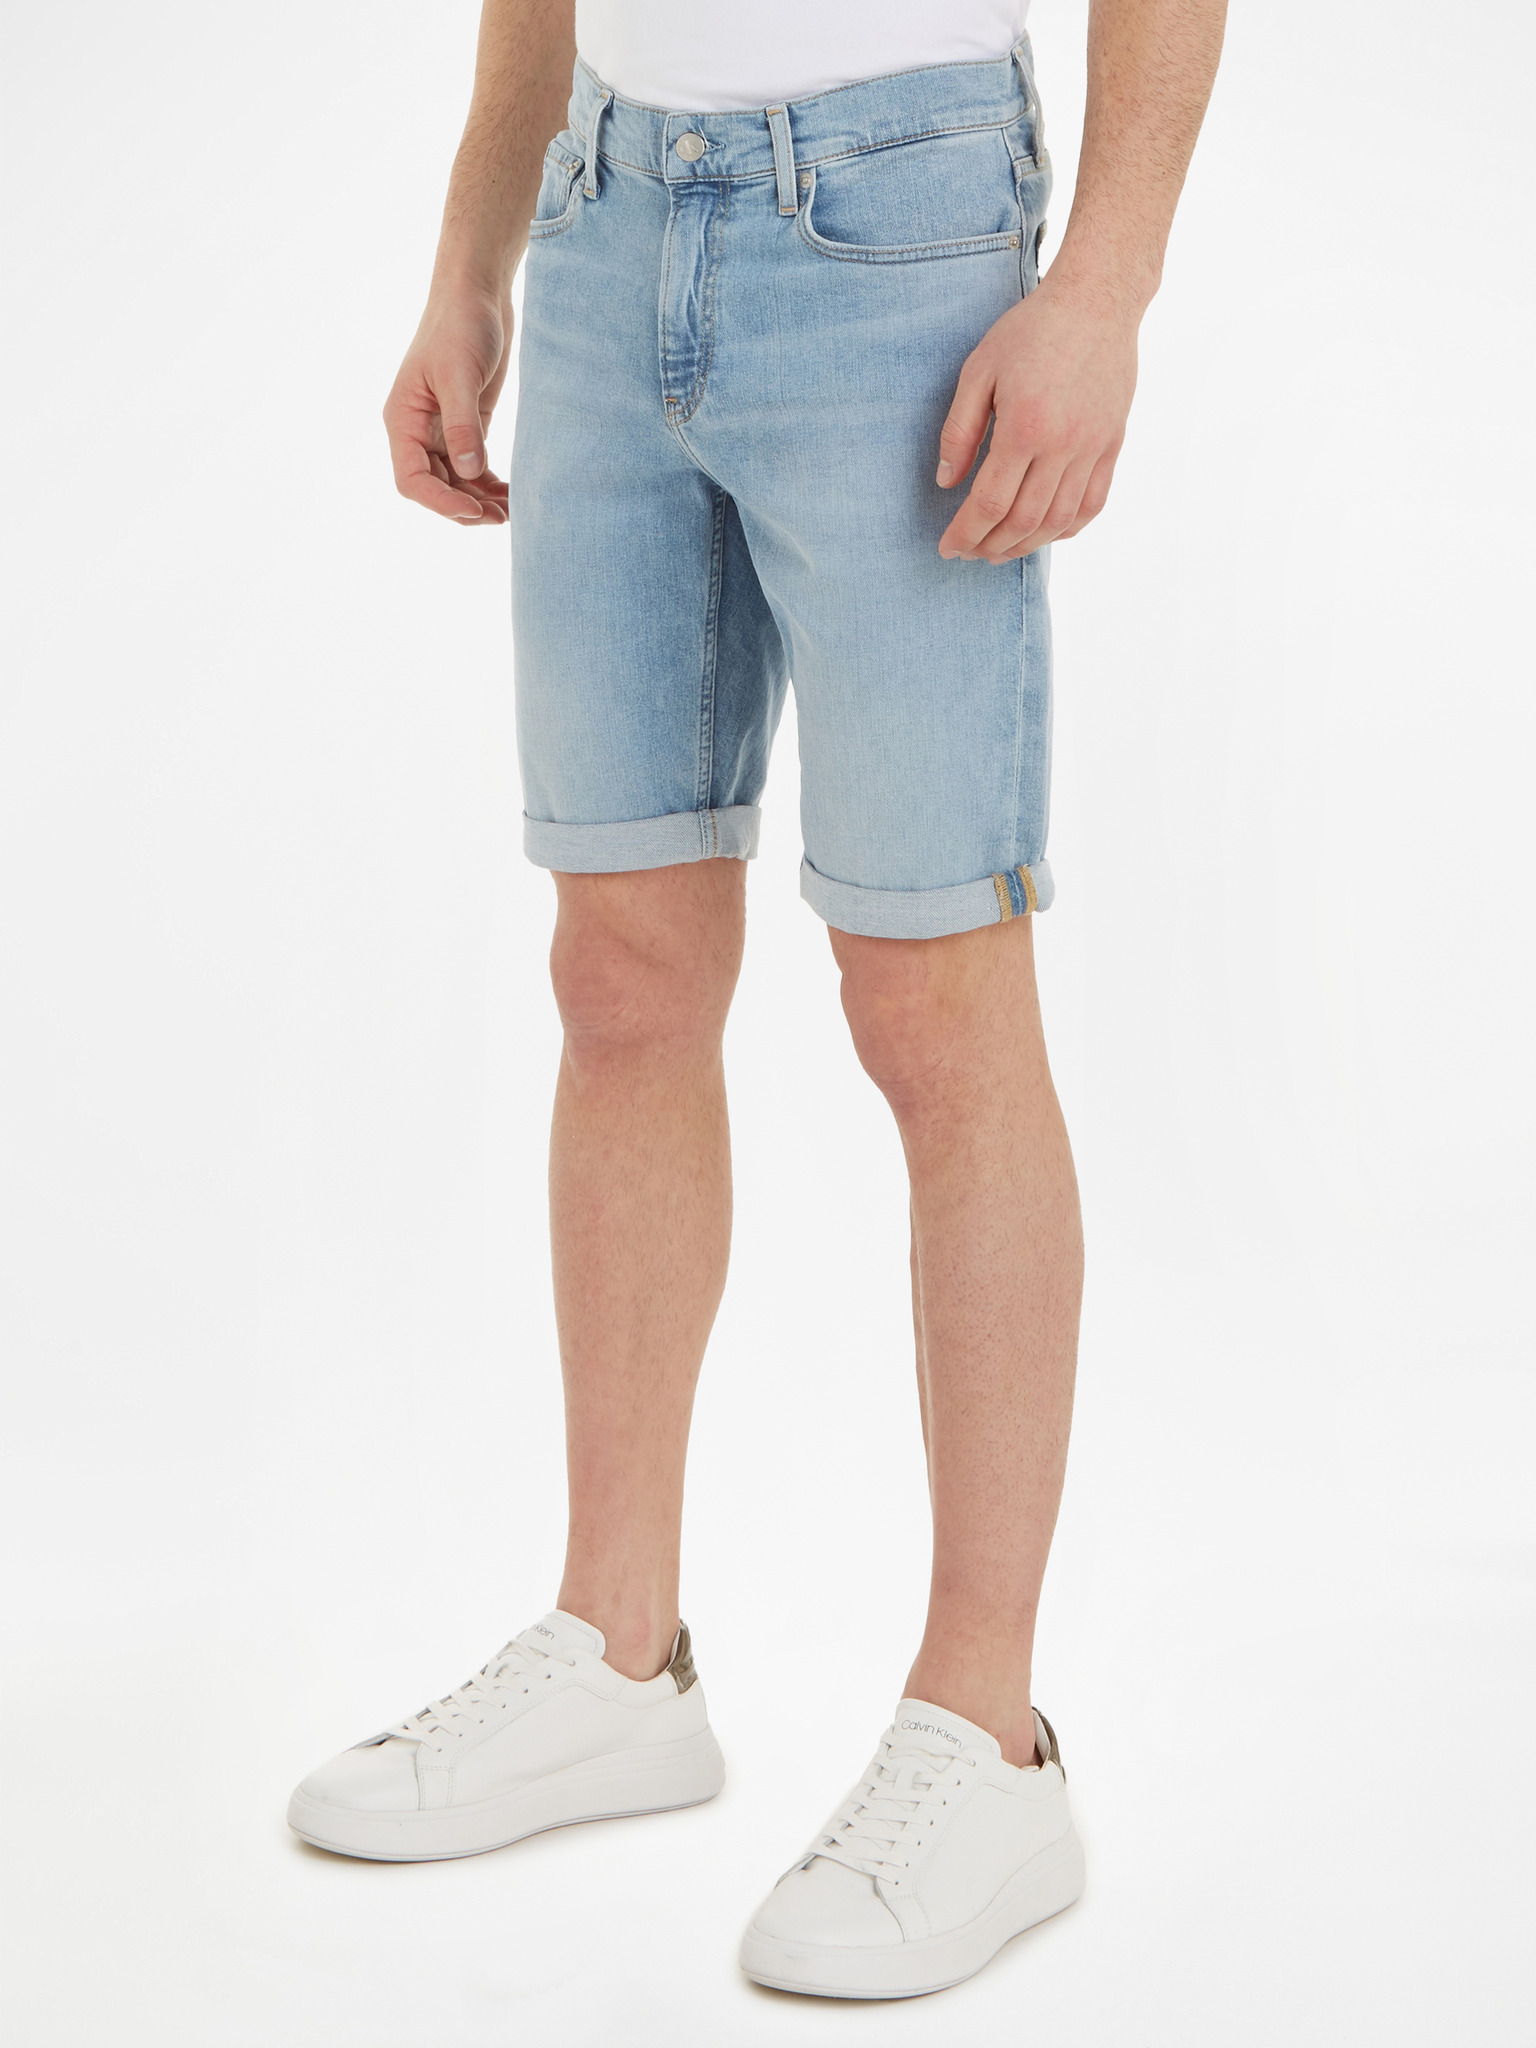 Streetwear Loose Fit Summer Denim Short | Summer shorts denim, Denim shorts,  Street wear